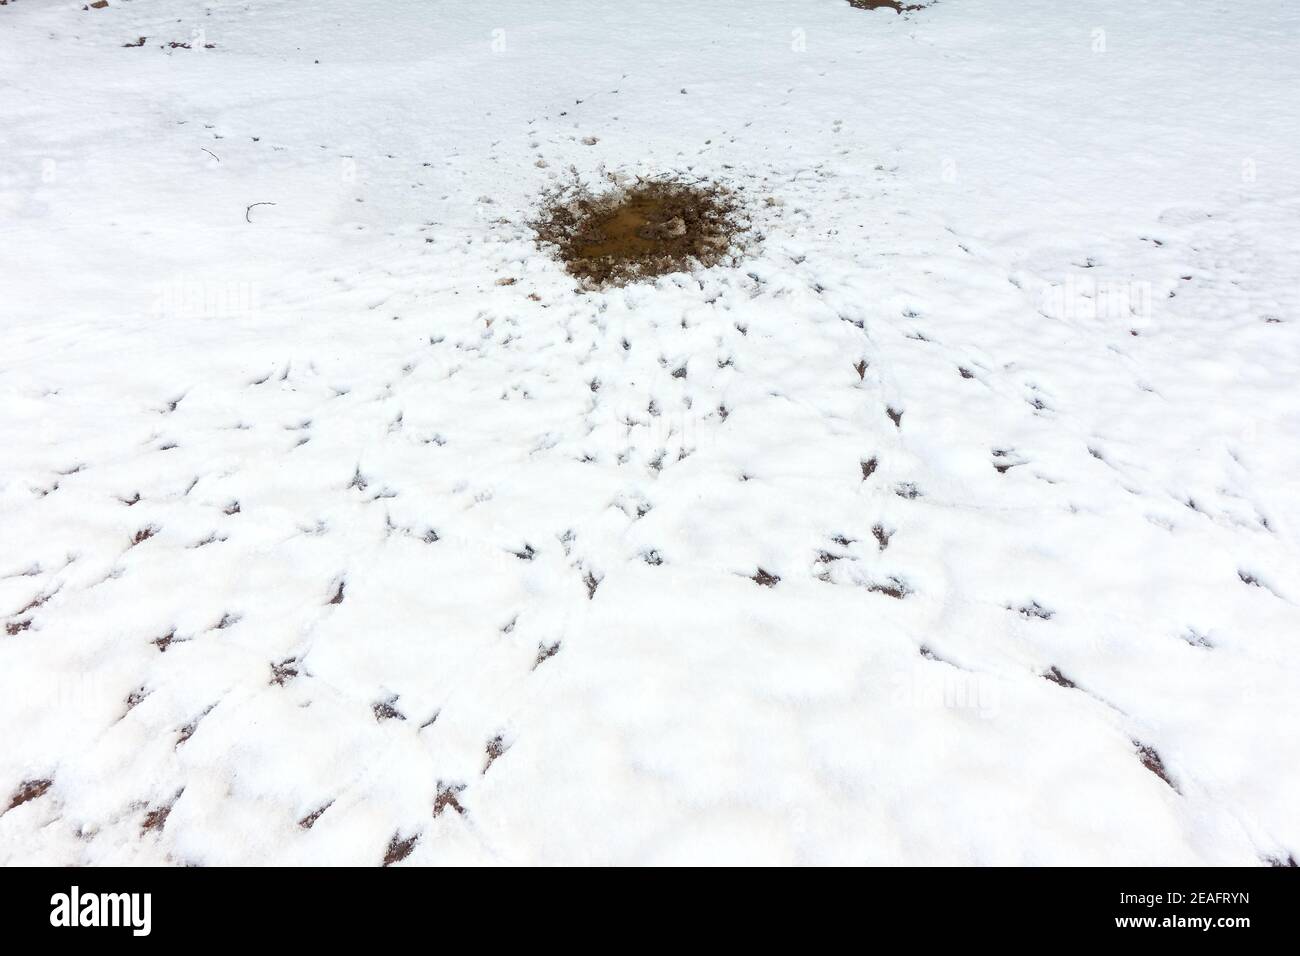 Segni di uccelli che si nutrono e bevono intorno ad un cerotto fuso di neve come evidenziato da impronte e tracce nel condizioni di inverno Foto Stock